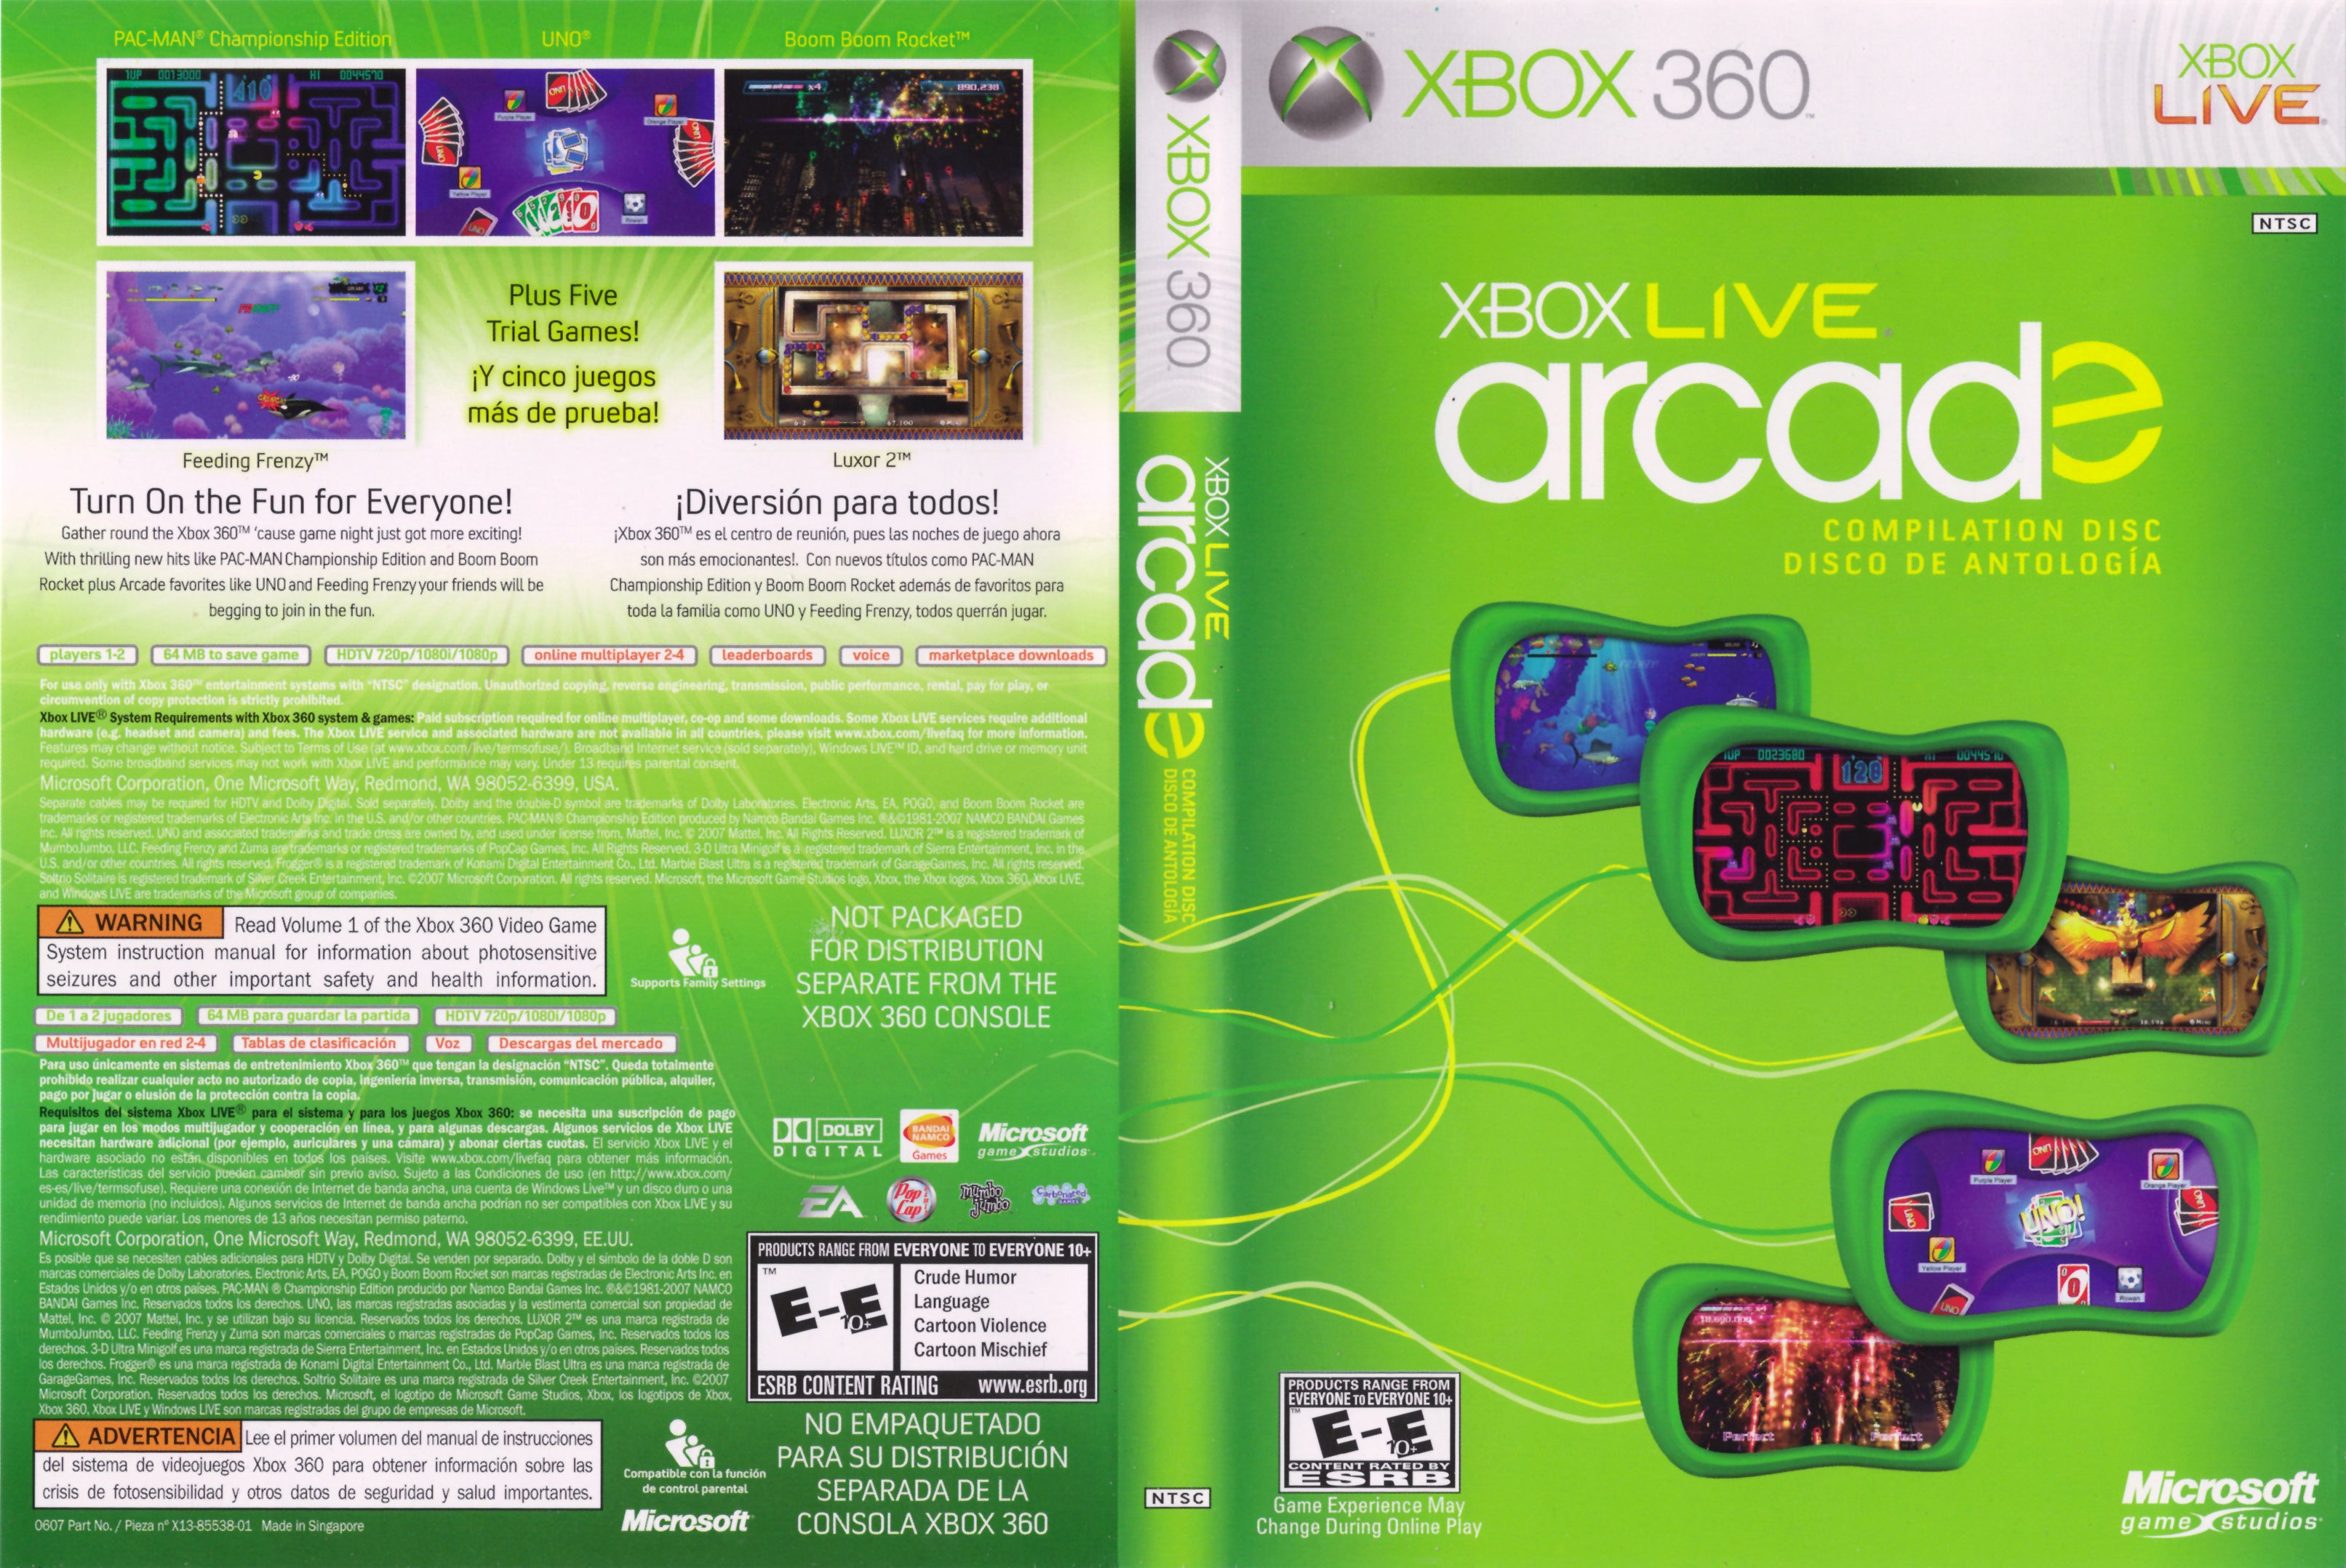 Код игры 360. Xbox Live Xbox 360. Xbox Arcade 360 игры диск. Xbox 360 Arcade. Xbox Live Arcade Compilation Disc для Xbox 360.